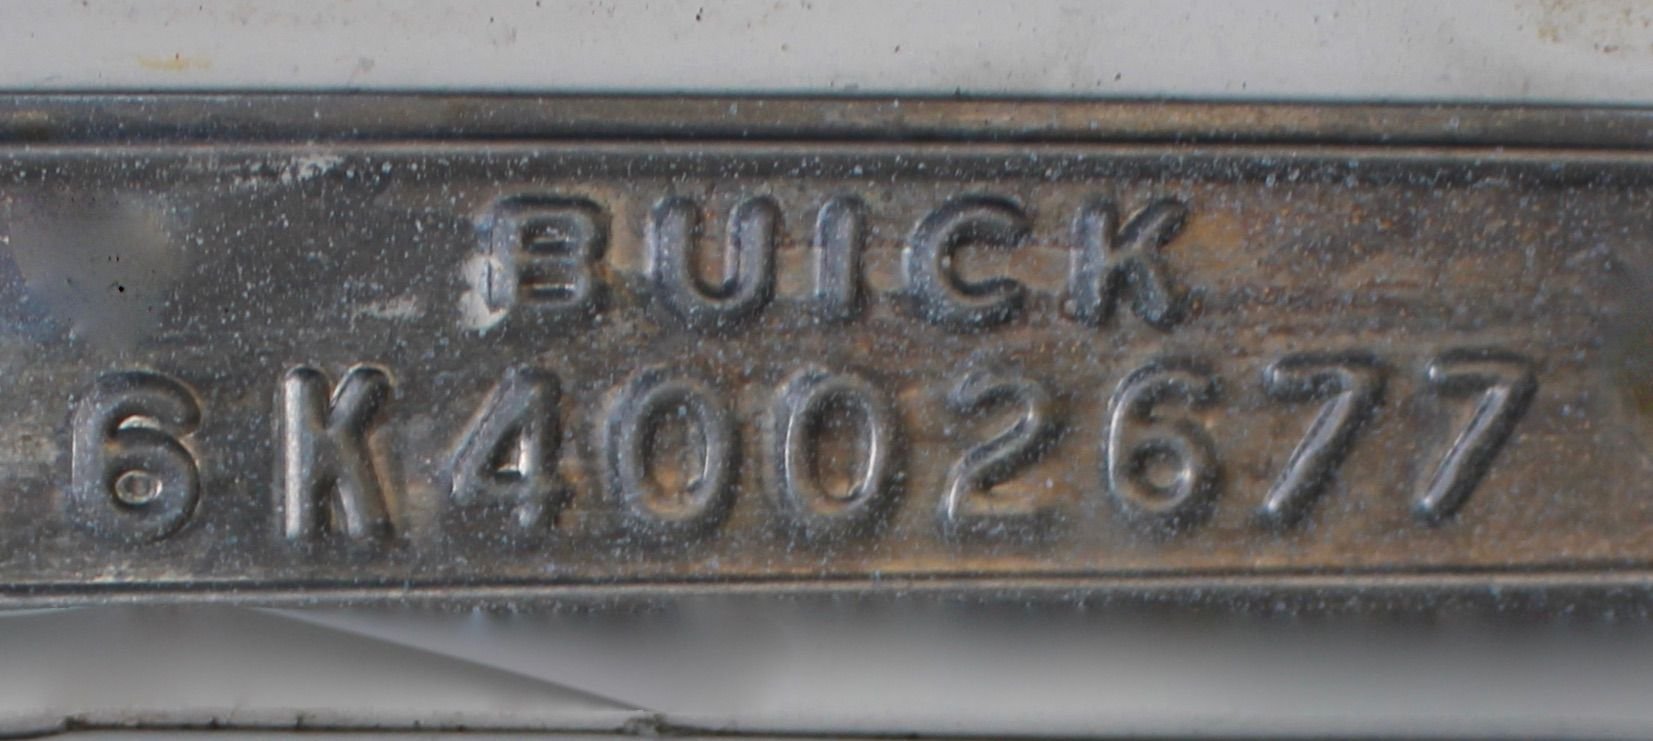 For Sale 1964 Buick Wildcat